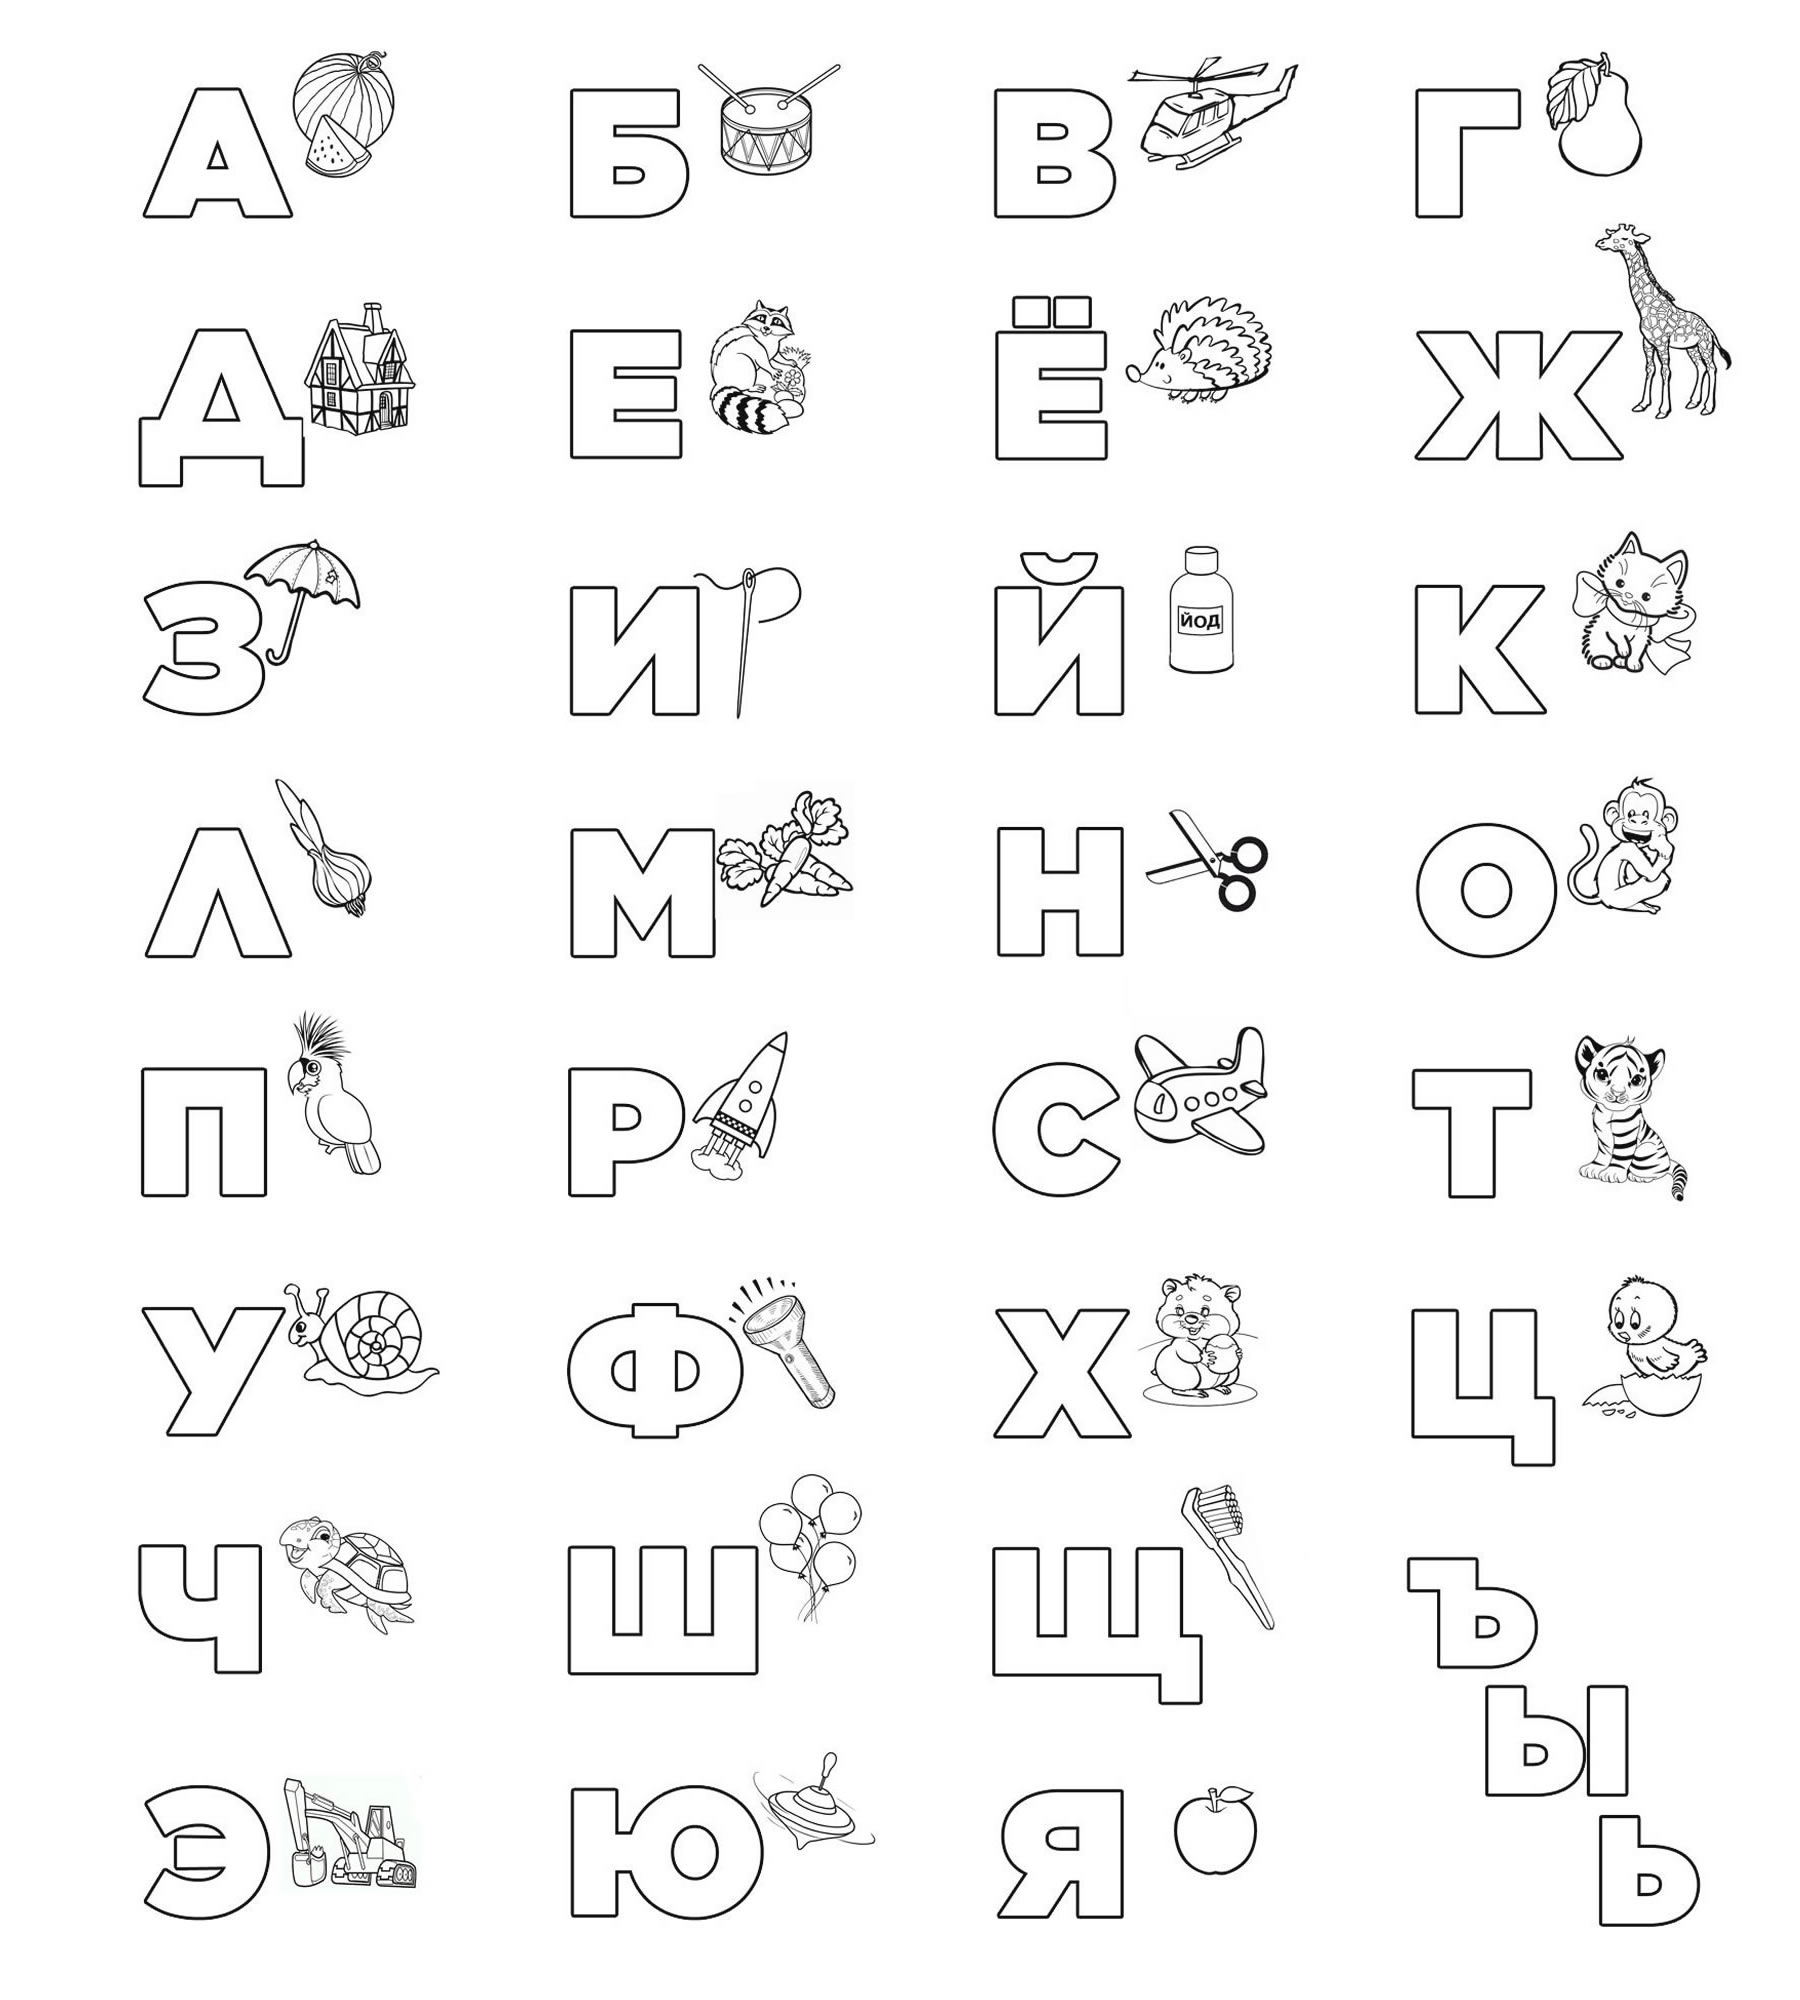 раскраска алфавит русский распечатать для детей | Раскраски, Алфавит, Детские раскраски